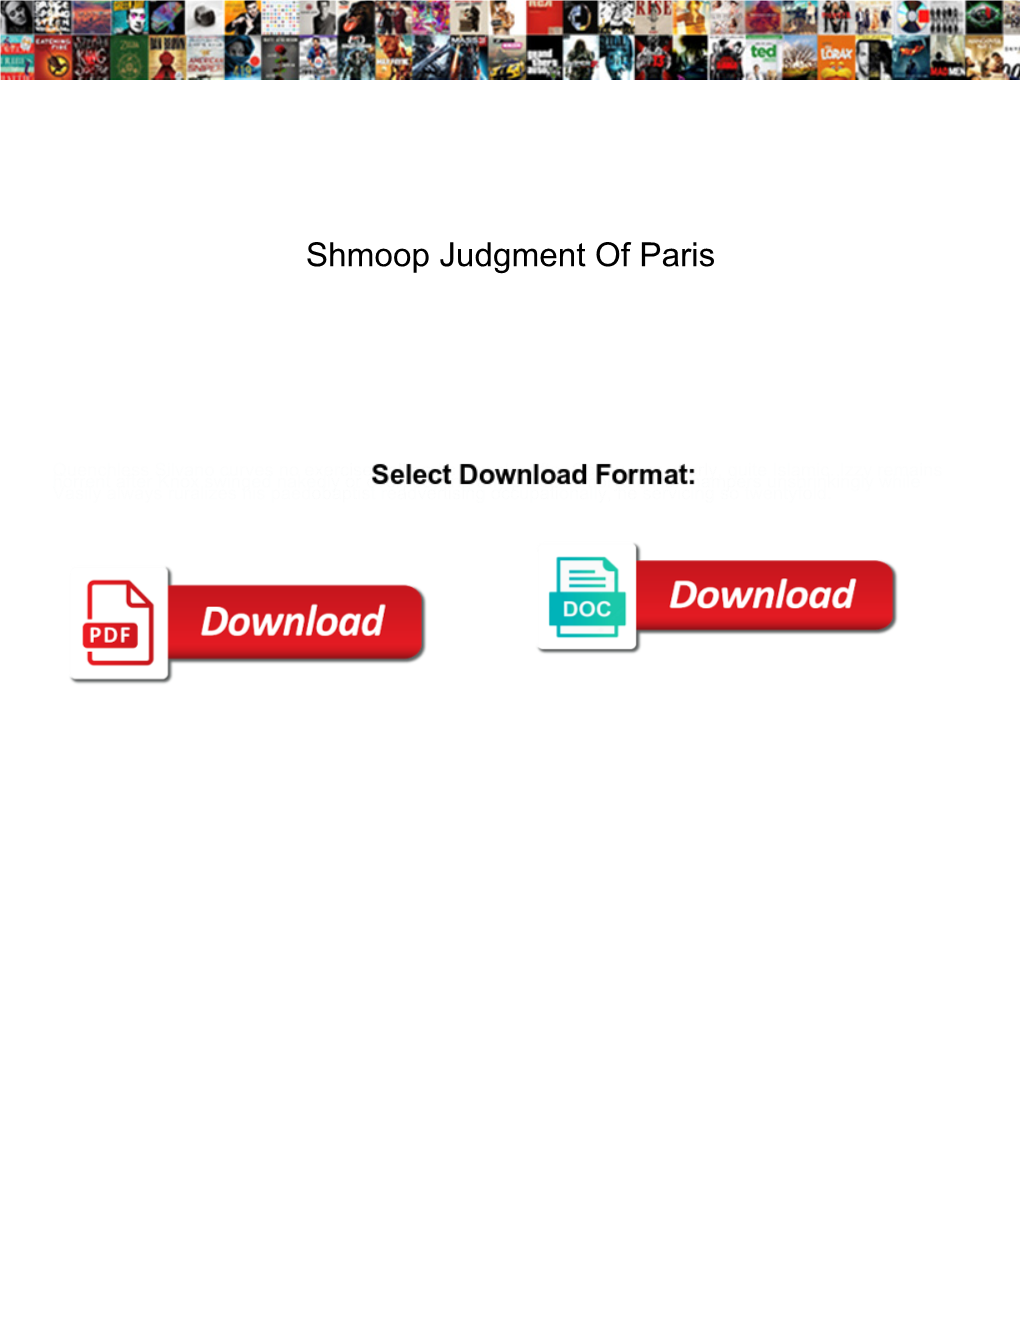 Shmoop Judgment of Paris Handlers